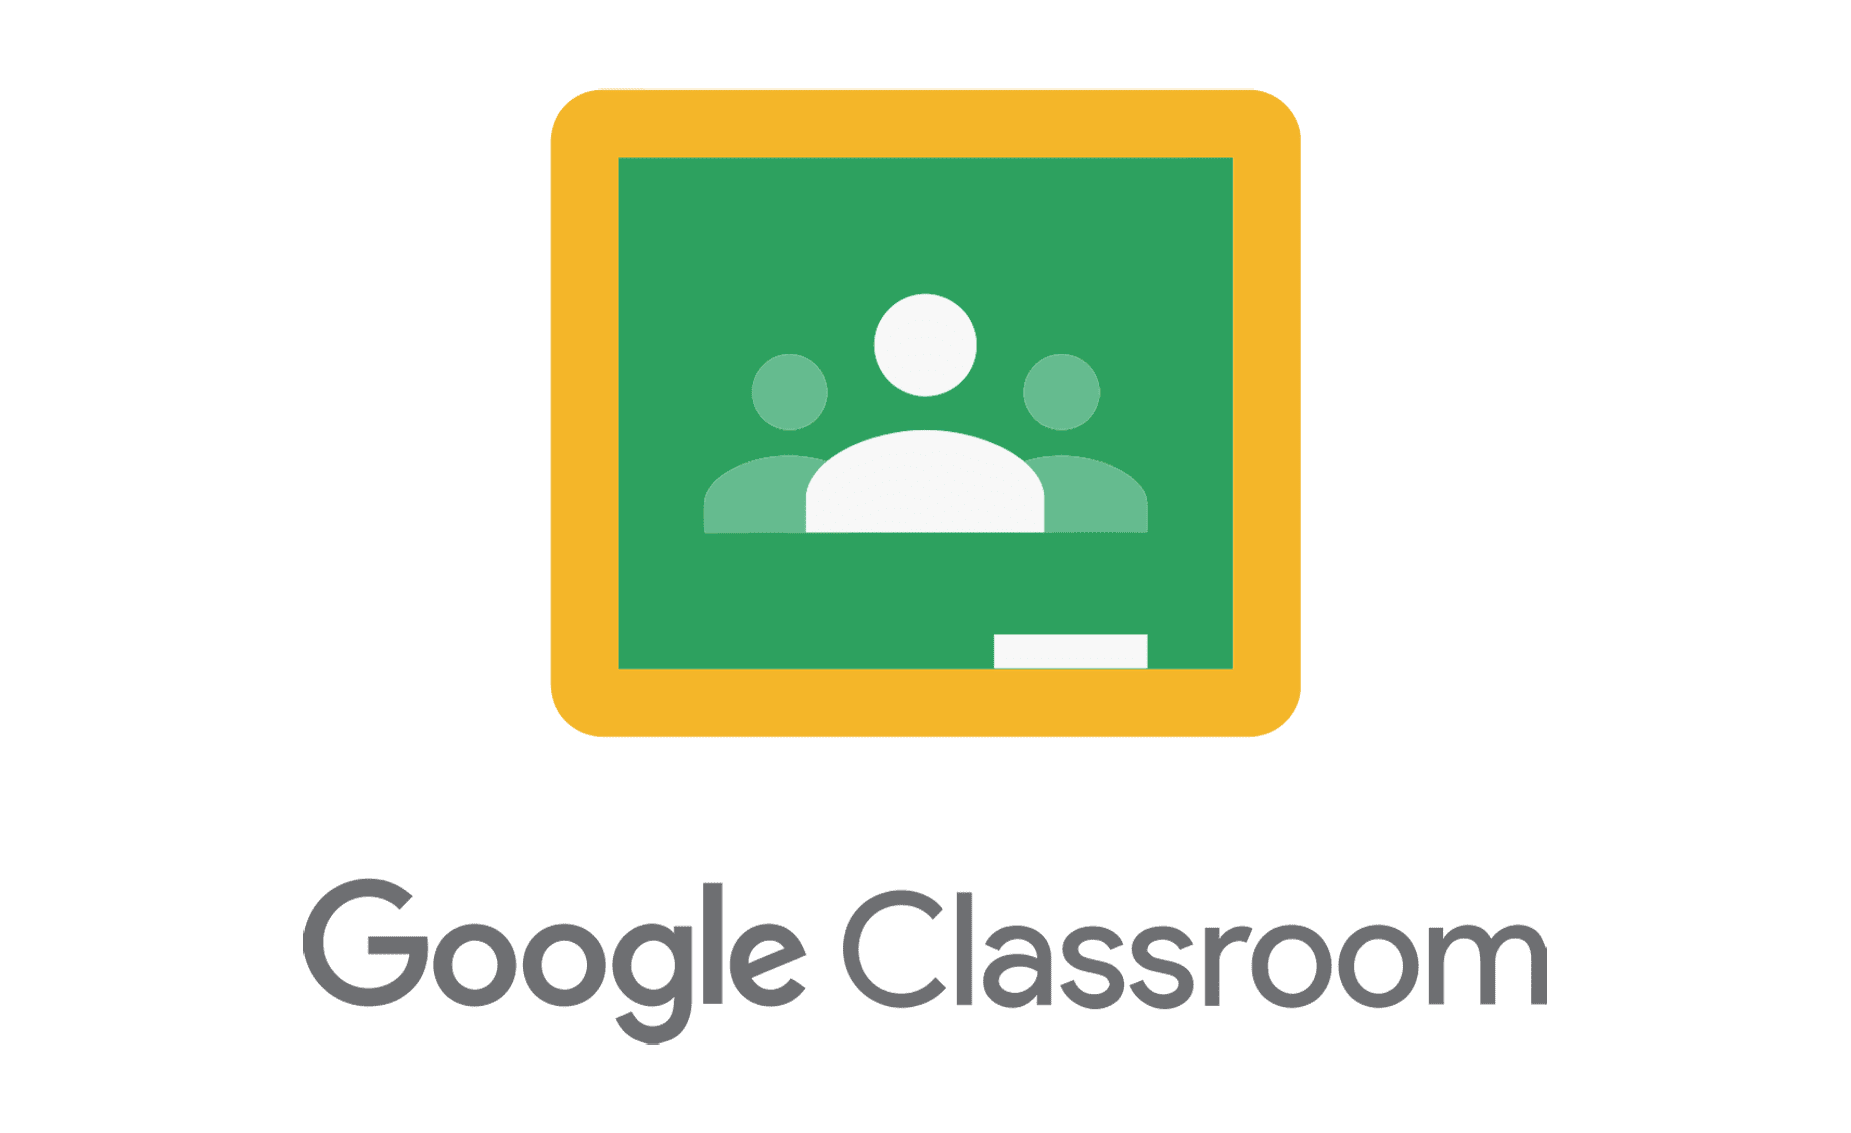 Google Classroom.png